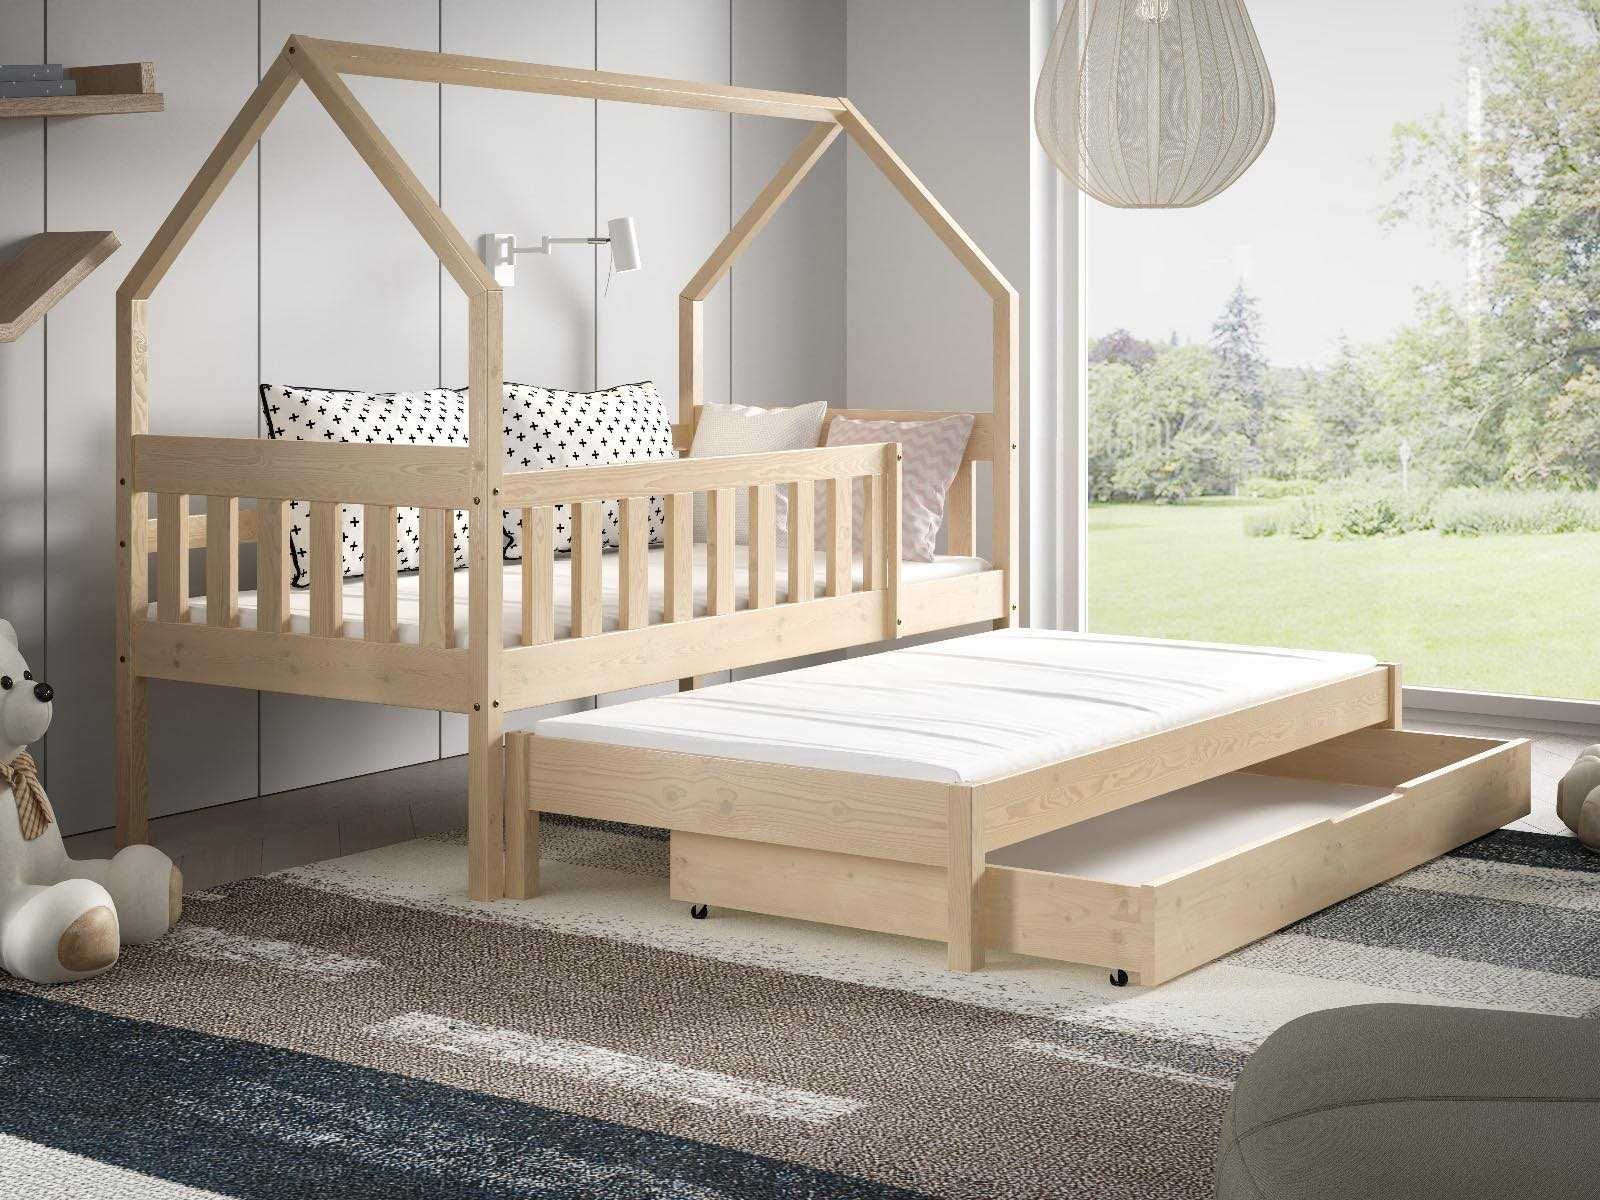 Łóżko dla 2 dzieci DOMEK LUNA wysuwane spanie kolory do wyboru